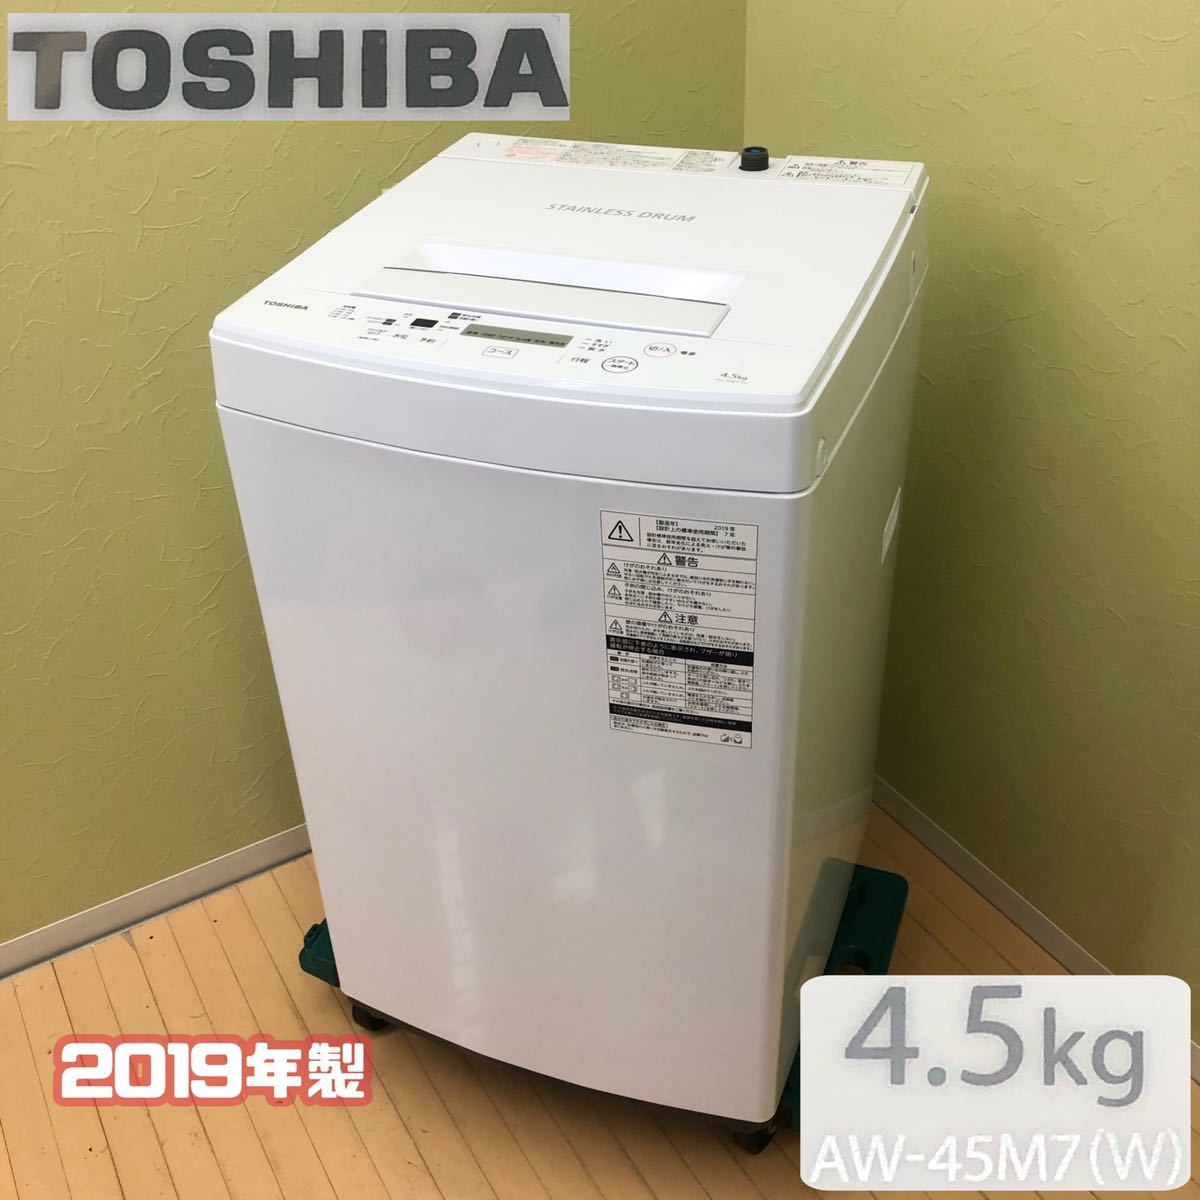 31番 東芝✨電気洗濯機✨AW-60GM‼️ www.altatec-net.com